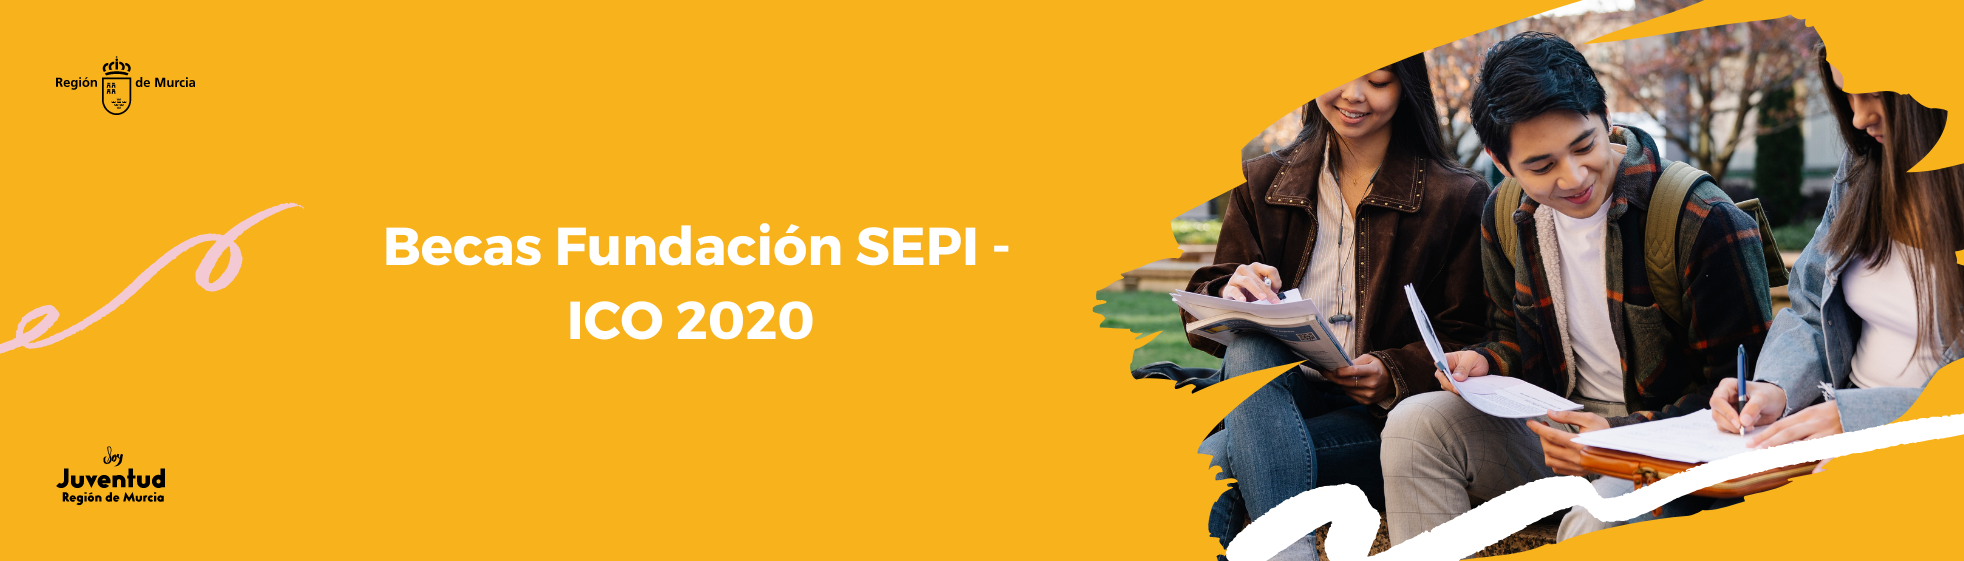 Becas Fundación SEPI - ICO 2020